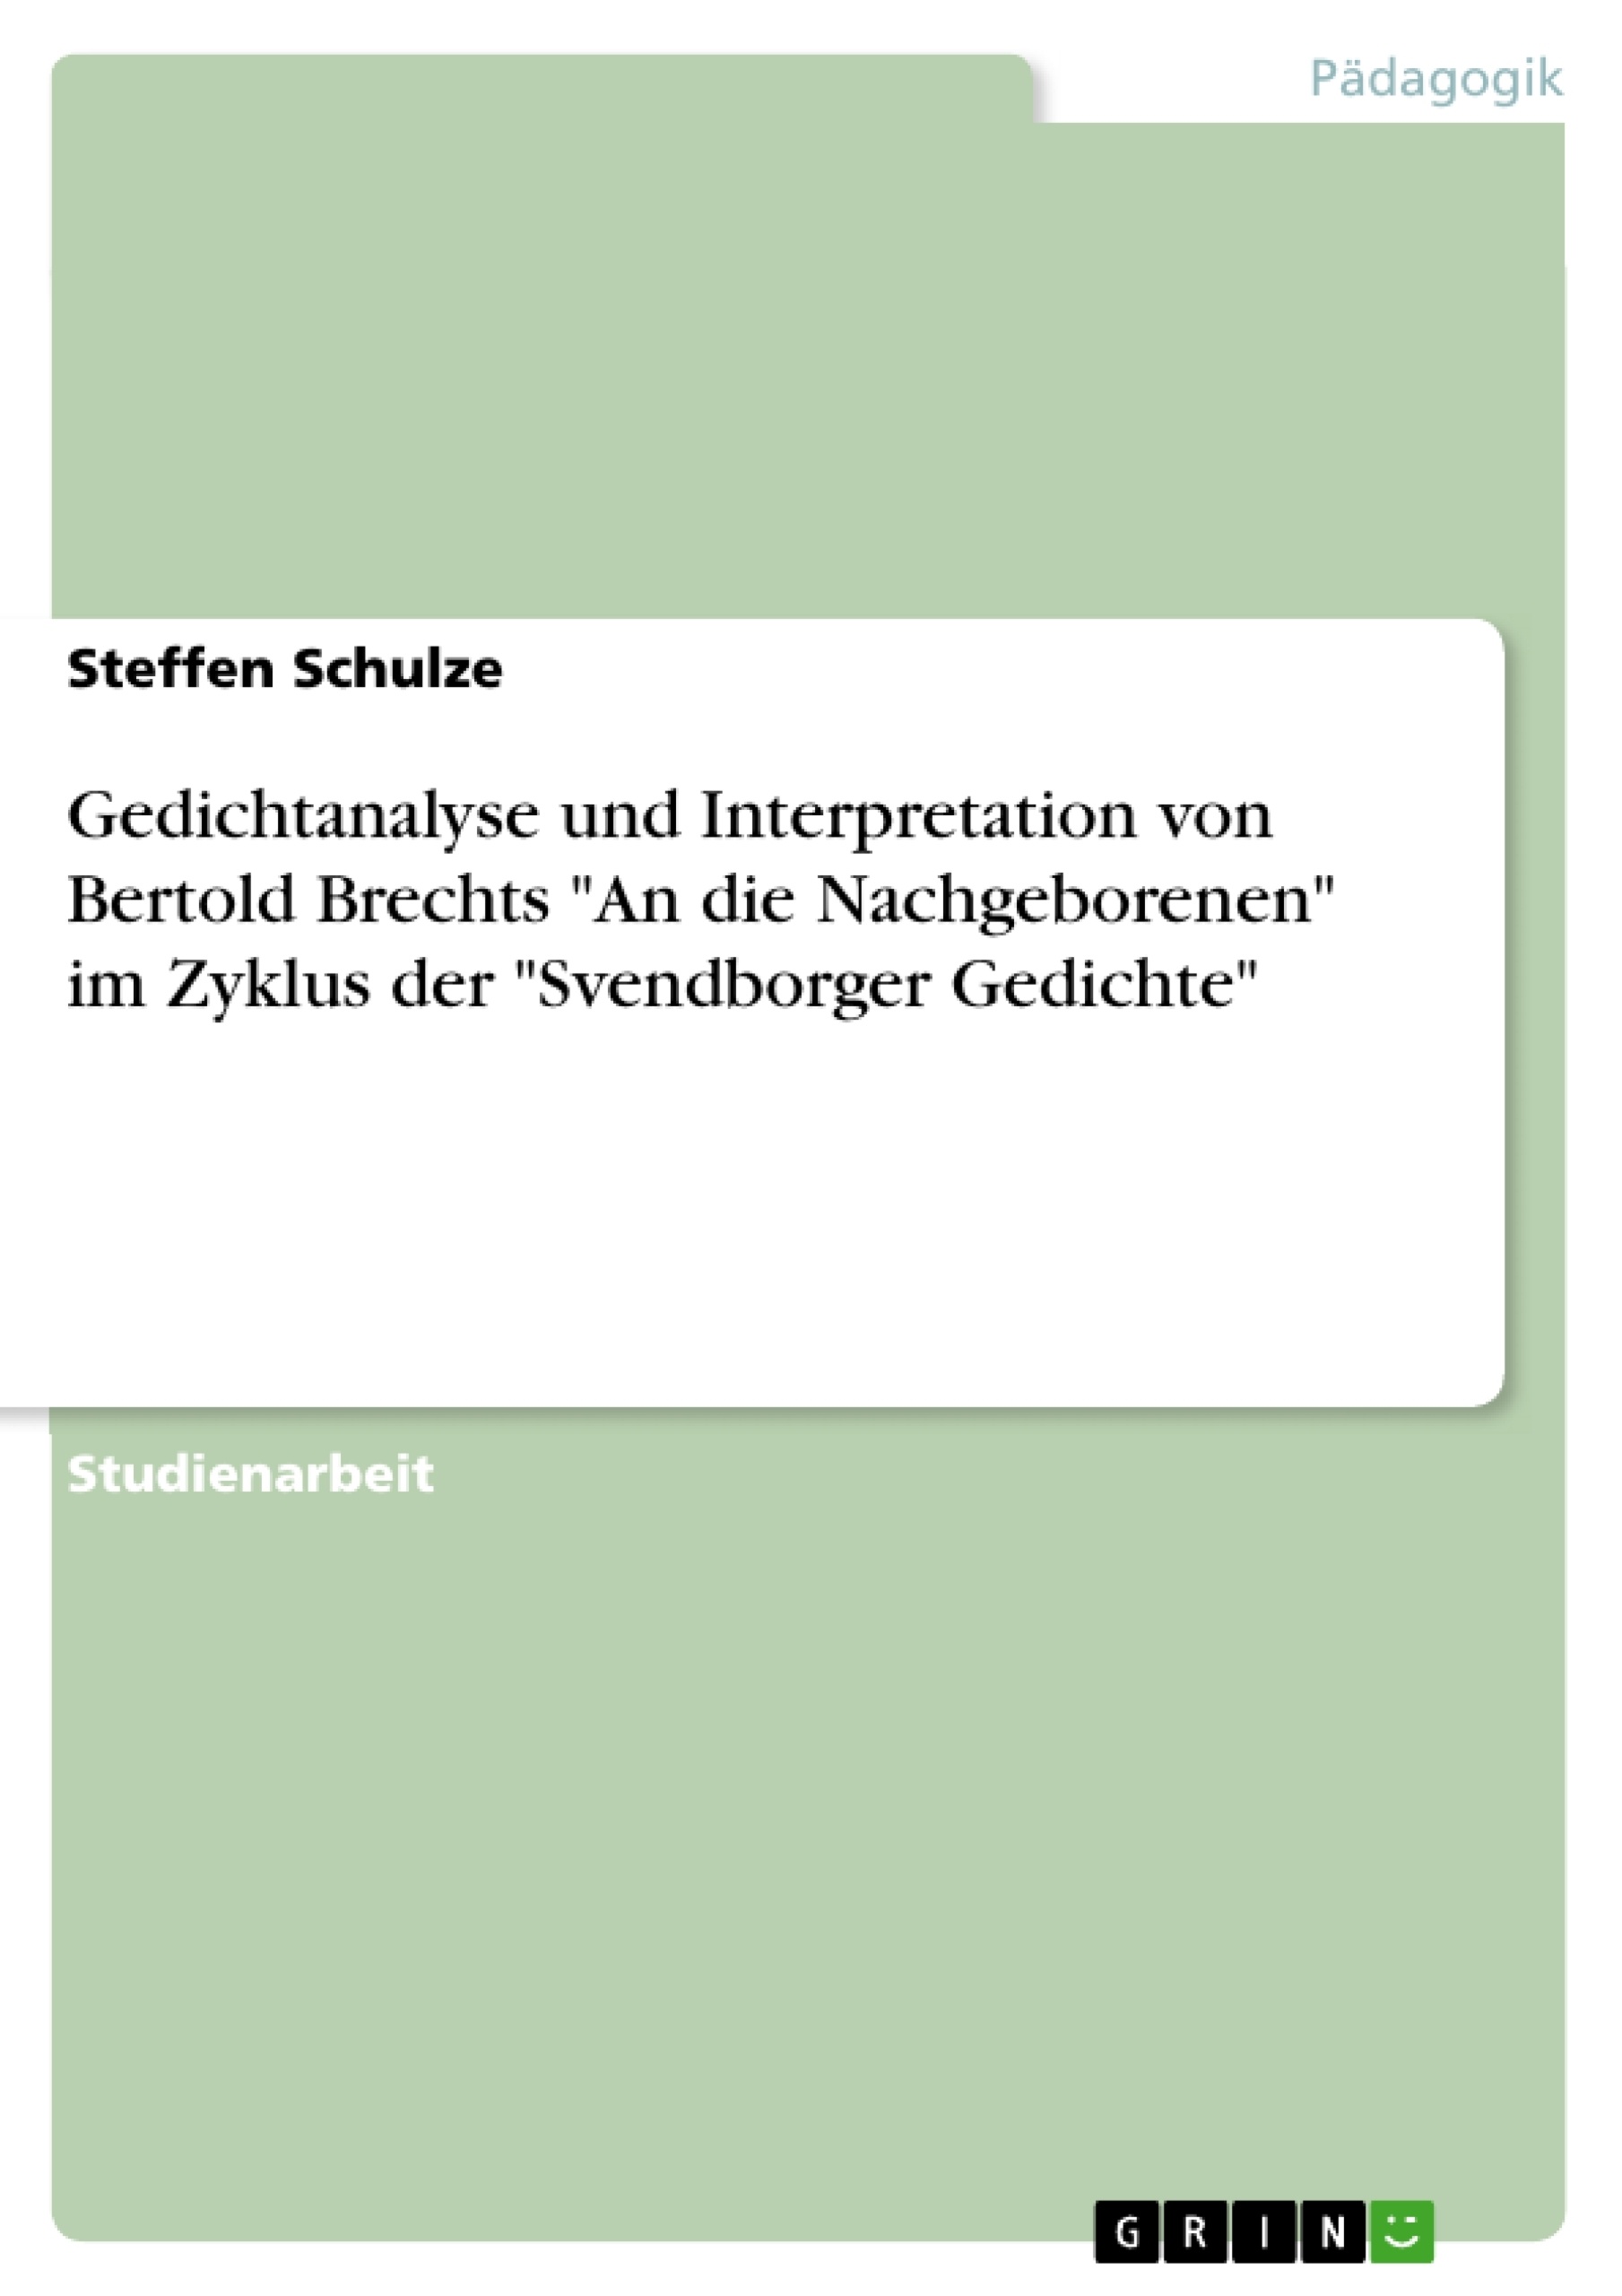 Título: Gedichtanalyse und Interpretation von Bertold Brechts "An die Nachgeborenen" im Zyklus der "Svendborger Gedichte"